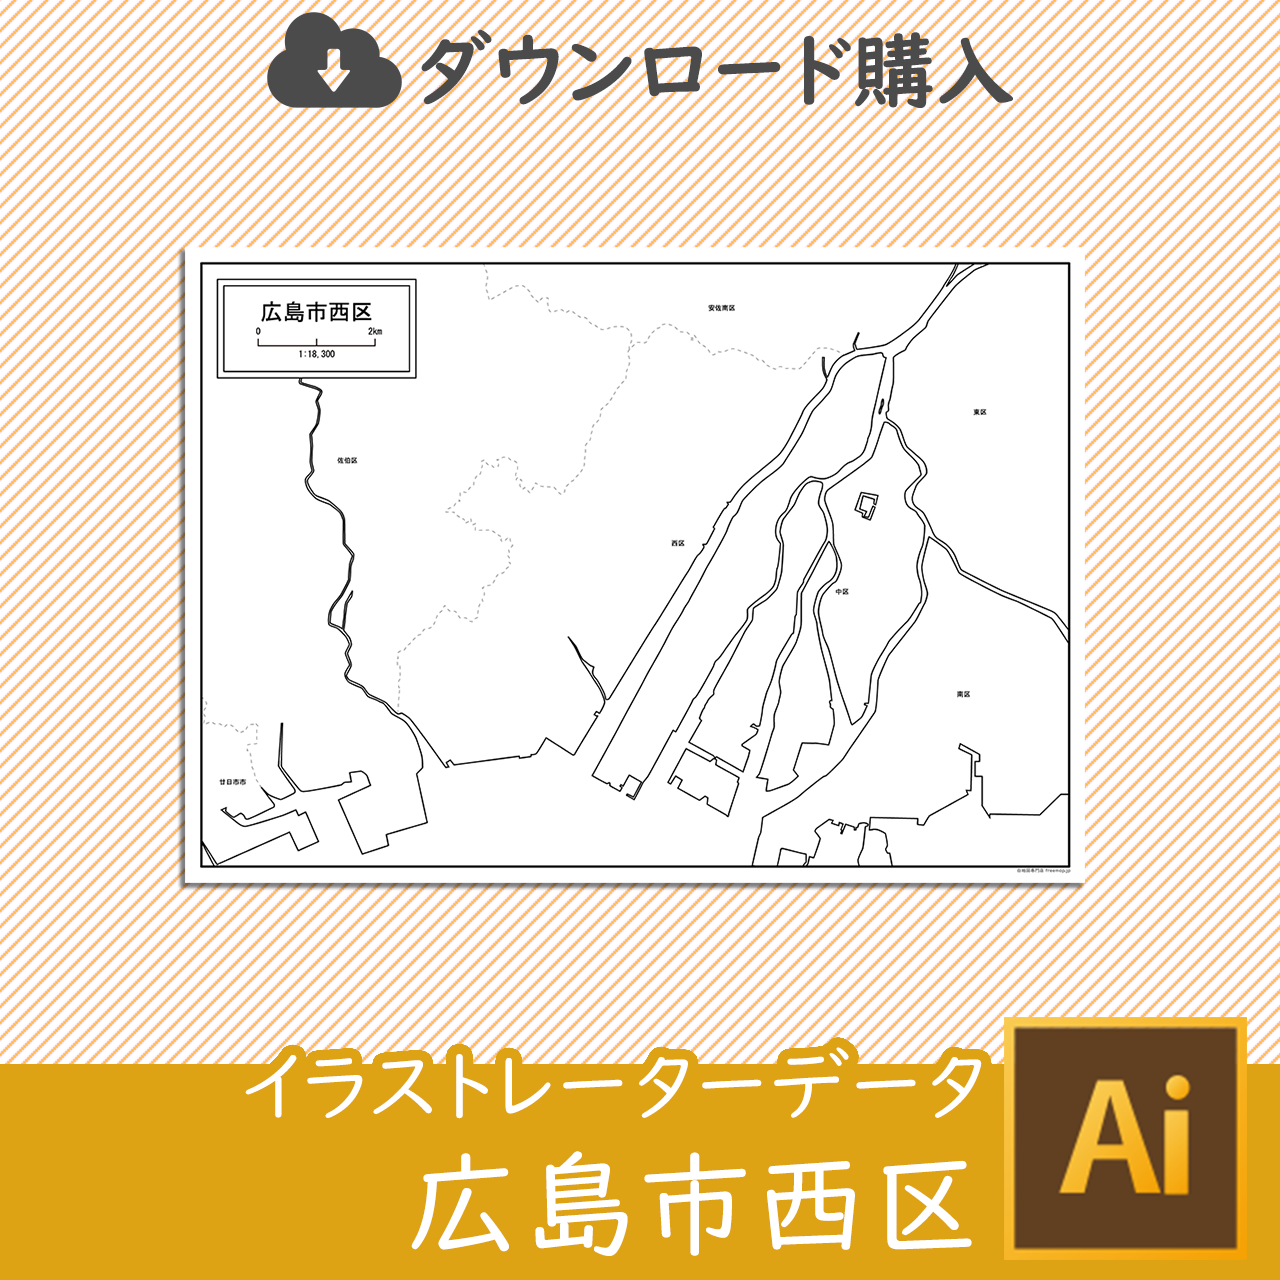 広島市と8区セットのサムネイル画像